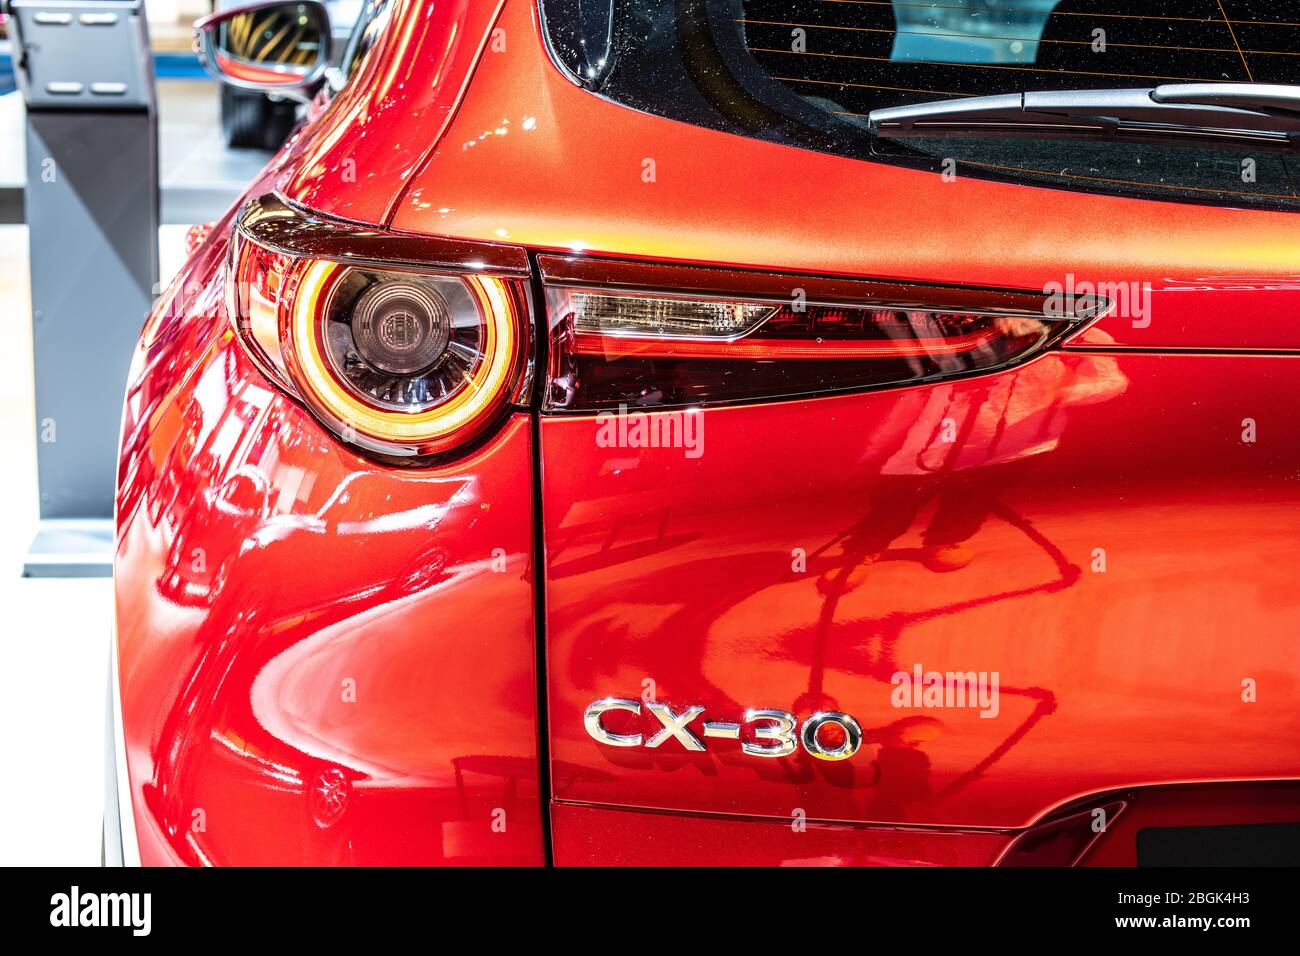 Bruxelles, Belgique, Jan 09, 2020: Mazda CX-30 Skyactif Technology au salon de l'automobile de Bruxelles, SUV croisé sous-compact fabriqué au Japon par Mazda Banque D'Images